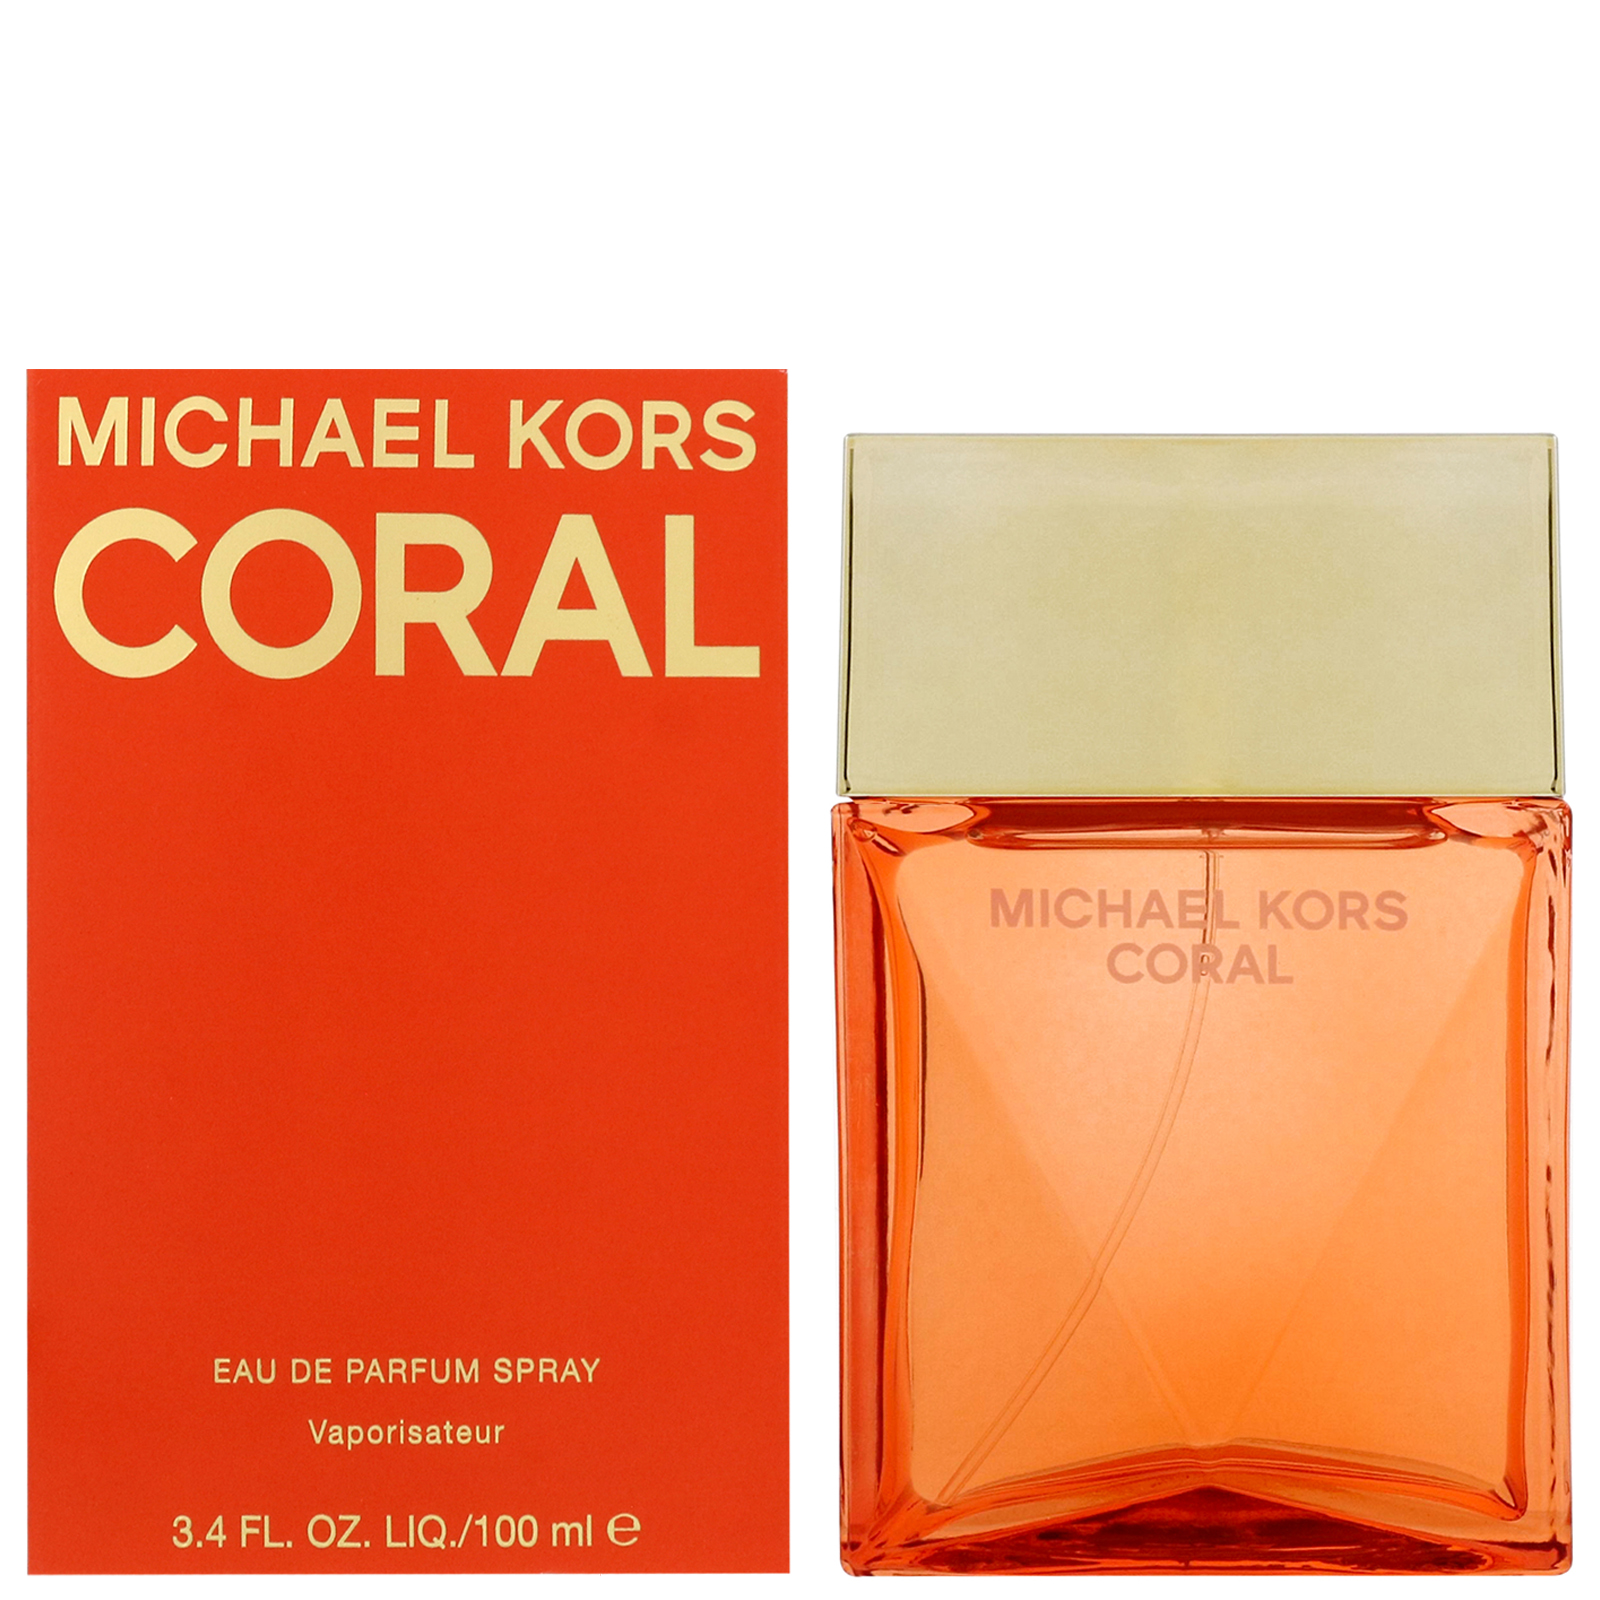 Michael Kors Coral - Eau de Parfum 30 ml